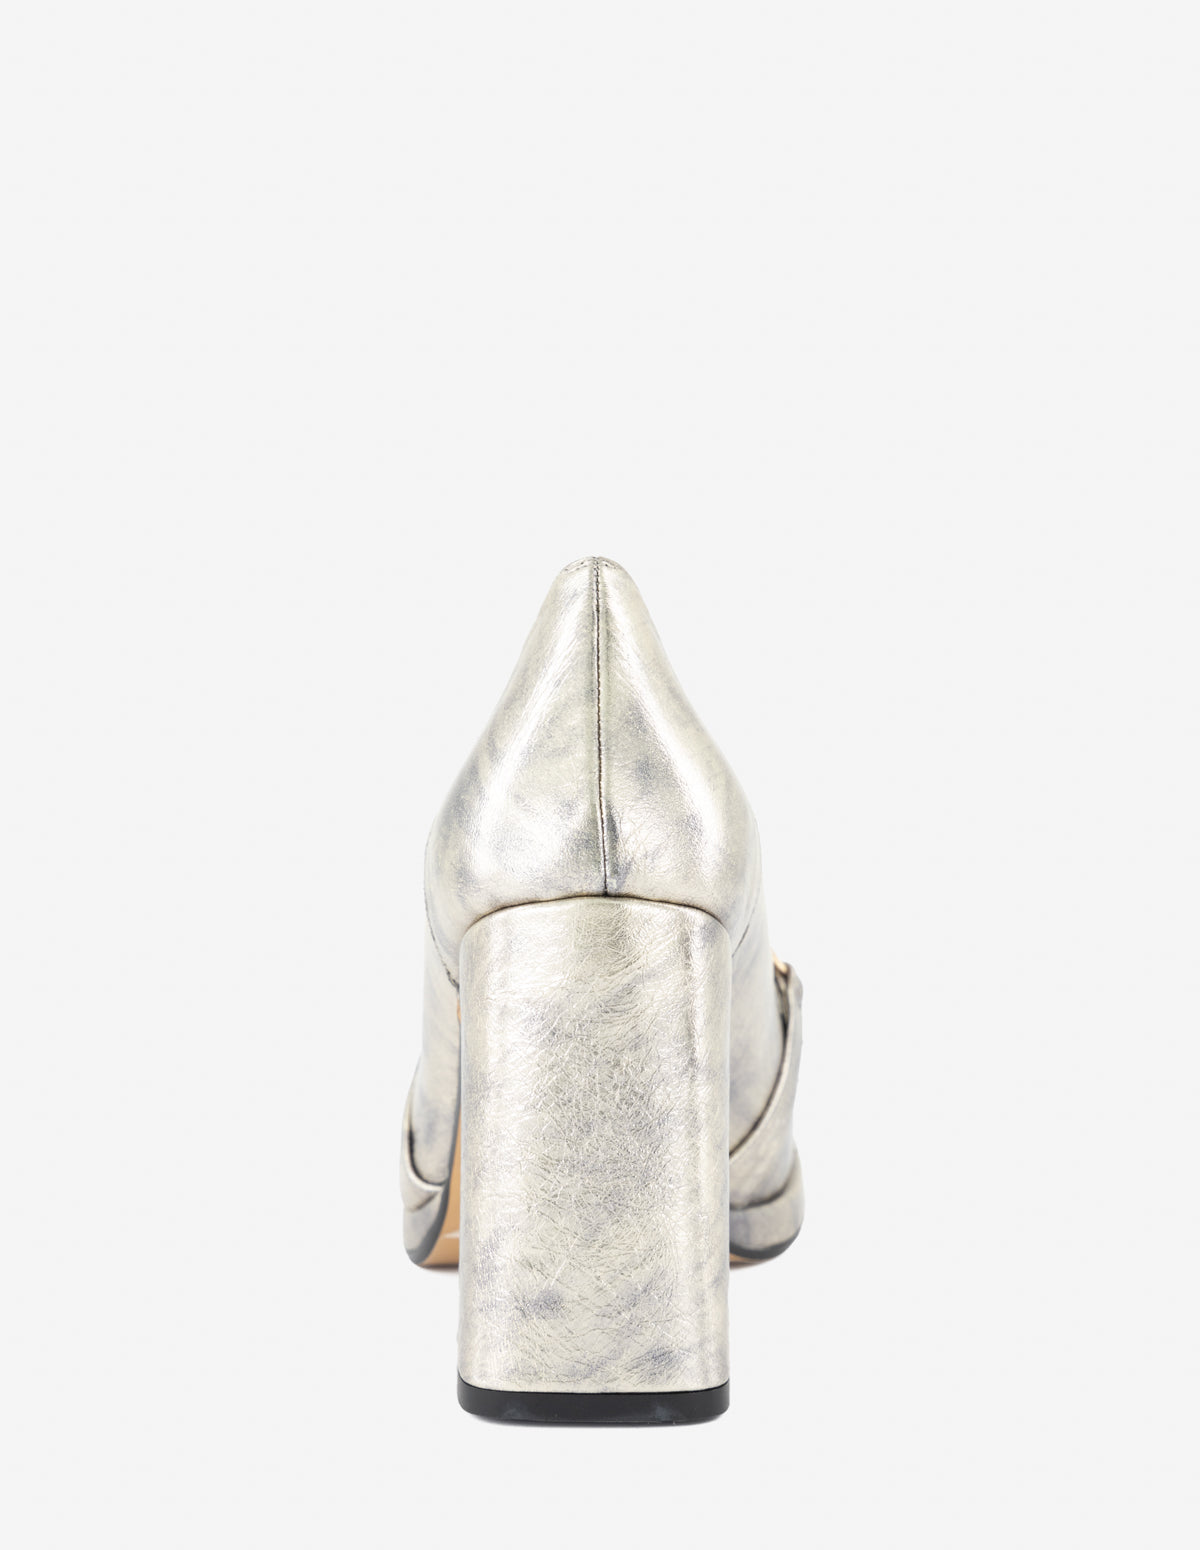 Mocasín en piel metalizada color plata con cierre en lateral interno para mujer